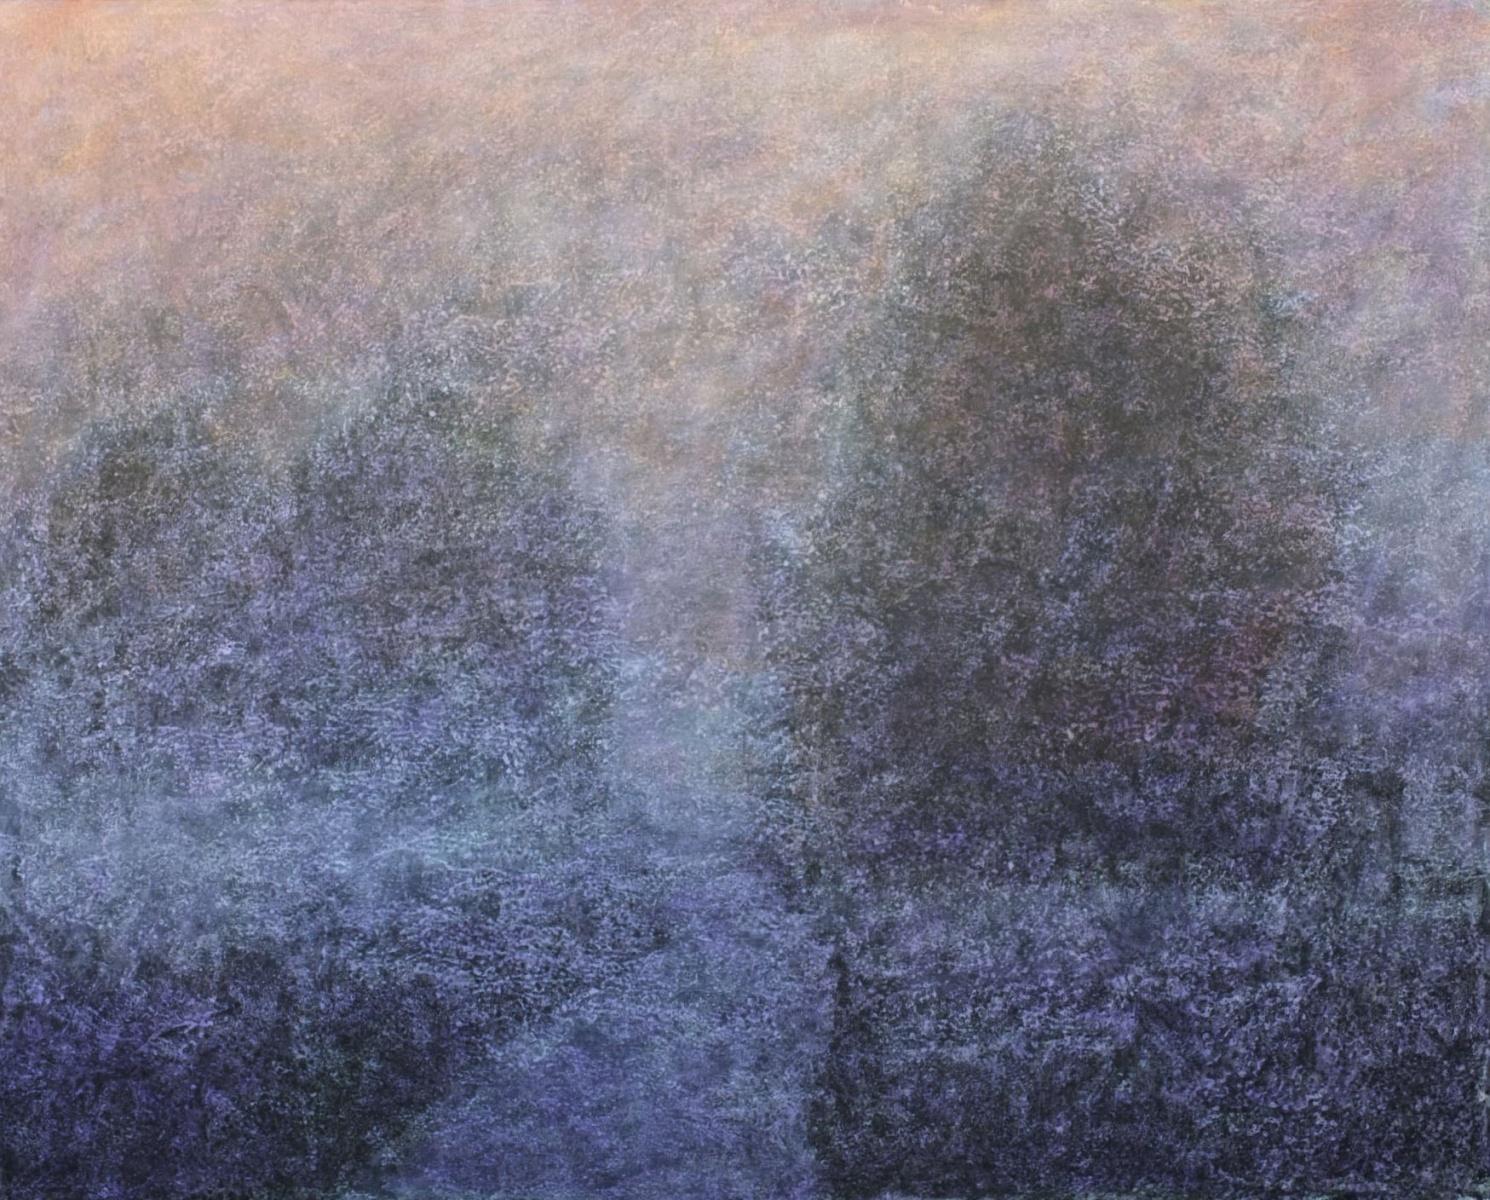 Tomek Mistak Abstract Painting – Melting of horizon - Acrylmalerei, Landschafts- und abstraktes Gemälde, Lila